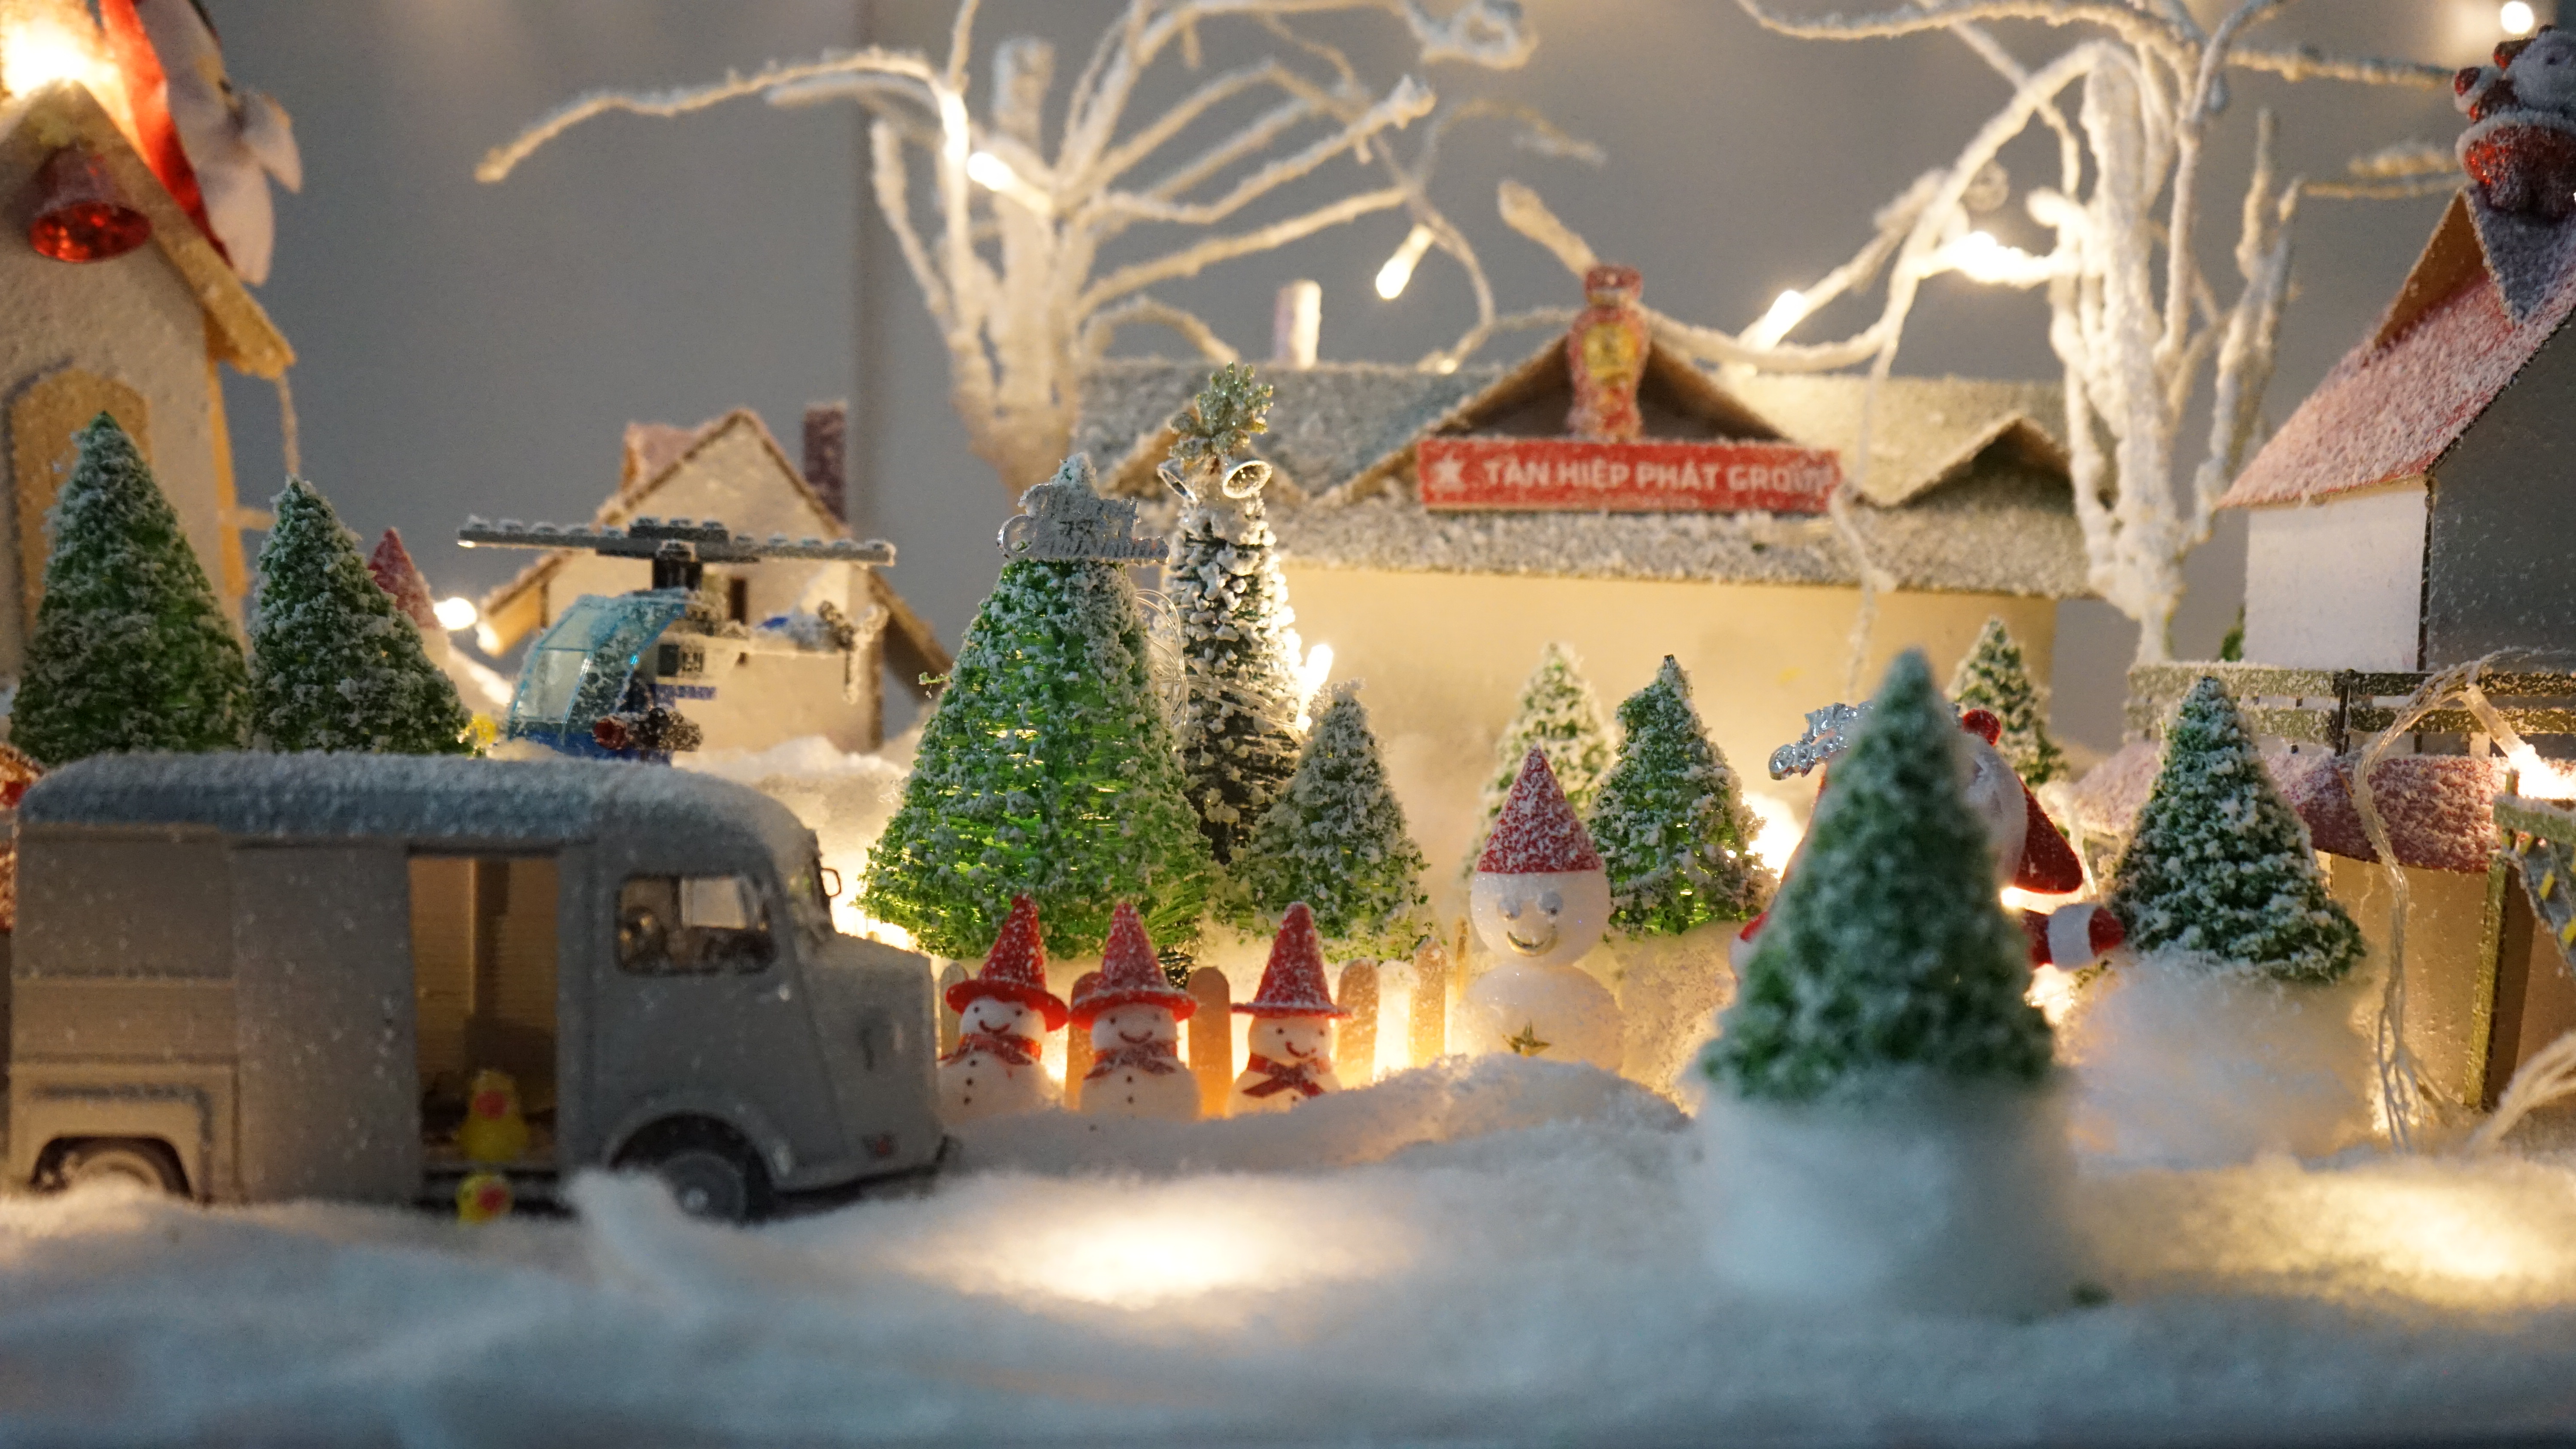 Đón một mùa Noel am ap và ý nghĩa tại gia với những hình ảnh đẹp mê hồn. Bạn có thể tìm thấy chút giản đơn từ cây thông Noel trang trí đầy màu sắc đến những chiếc bánh quy ngọt ngào đang chờ bạn. Hãy bấm vào hình ảnh để thưởng thức không khí Noel ấm cúng ngay bây giờ!